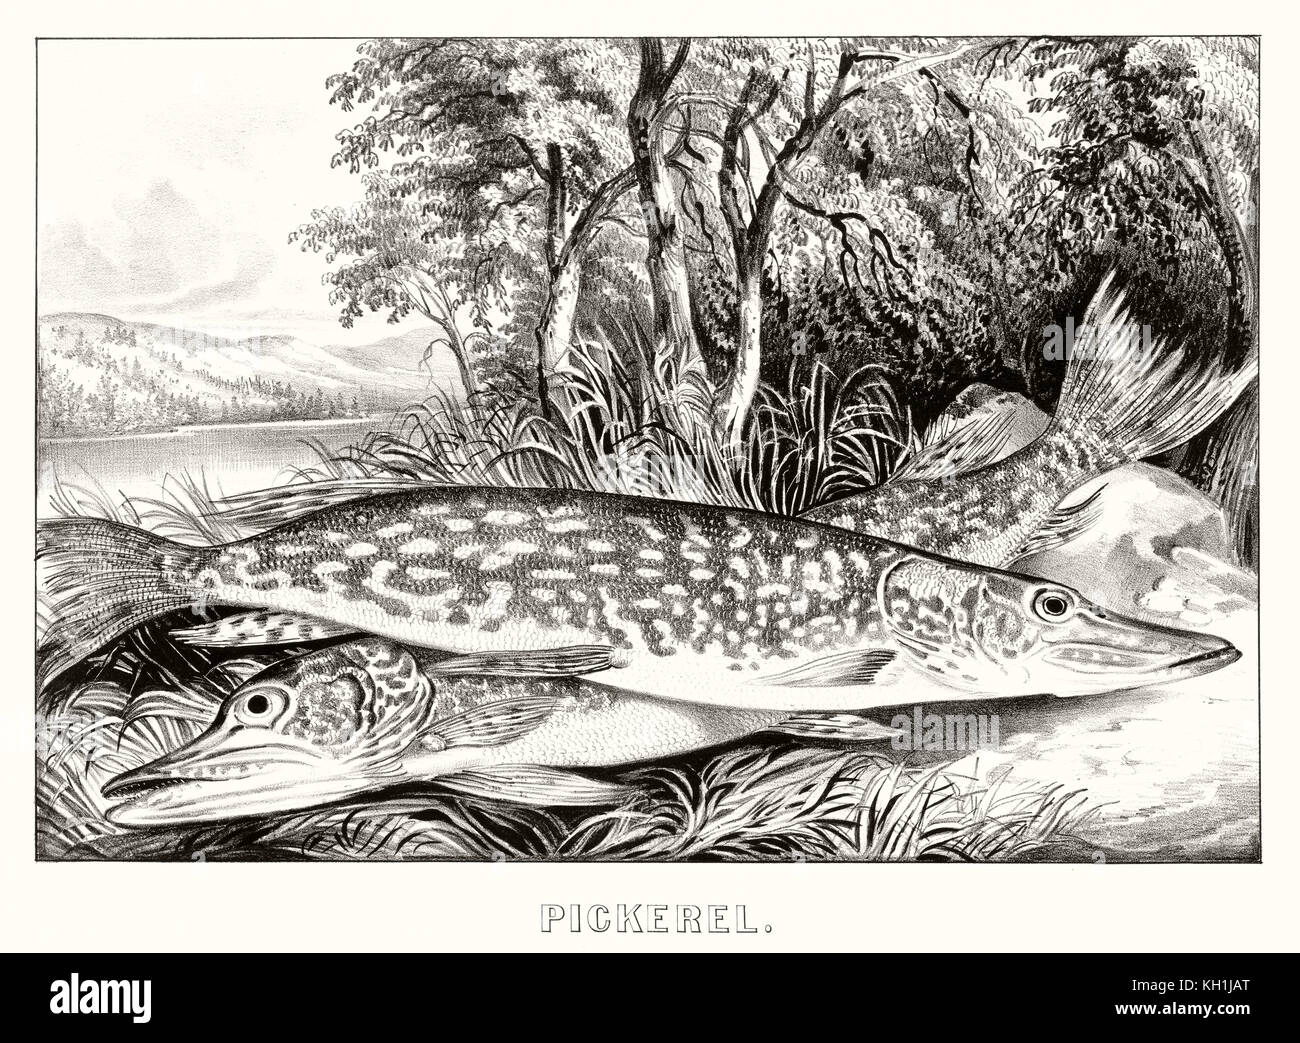 Vieille illustration de Pickerel (Esox americanus). Par Currier & Ives, publ. à New York, 1872 Banque D'Images